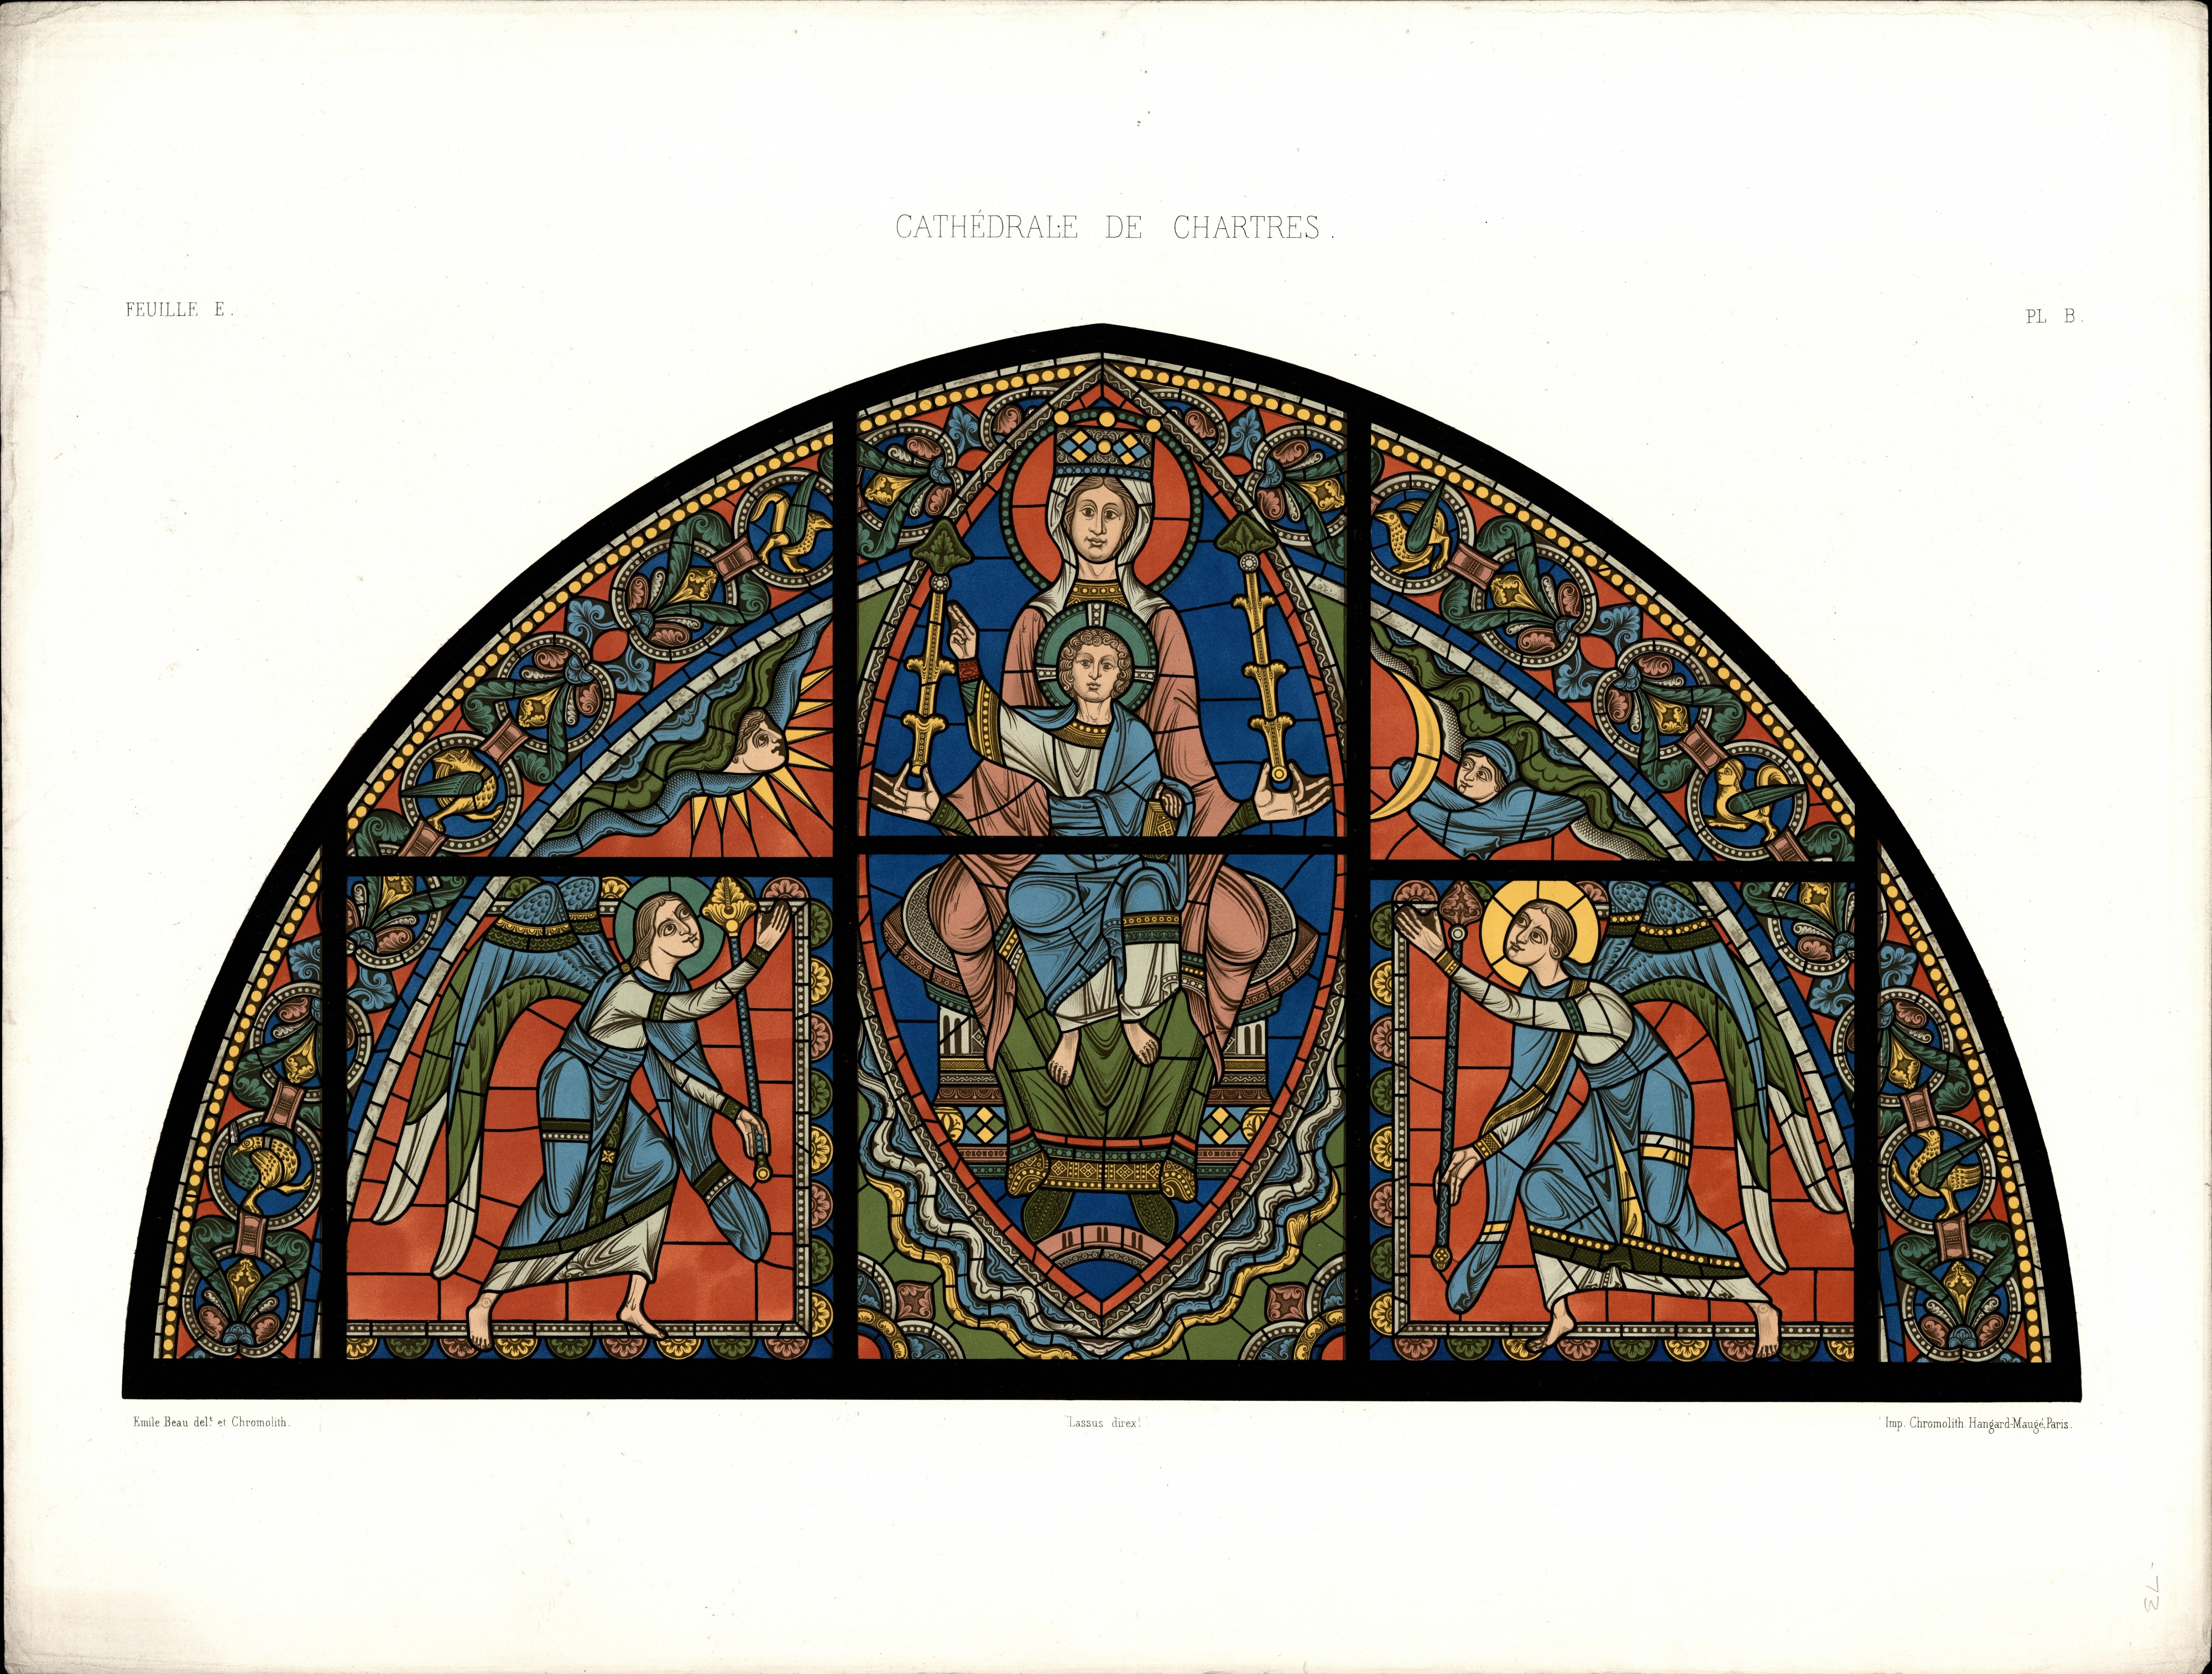 Monografie de la Cathedrale de Chartres - Atlas - Vitrail de la vie de Jesus Christ Feuille E - Chromo-lithographie